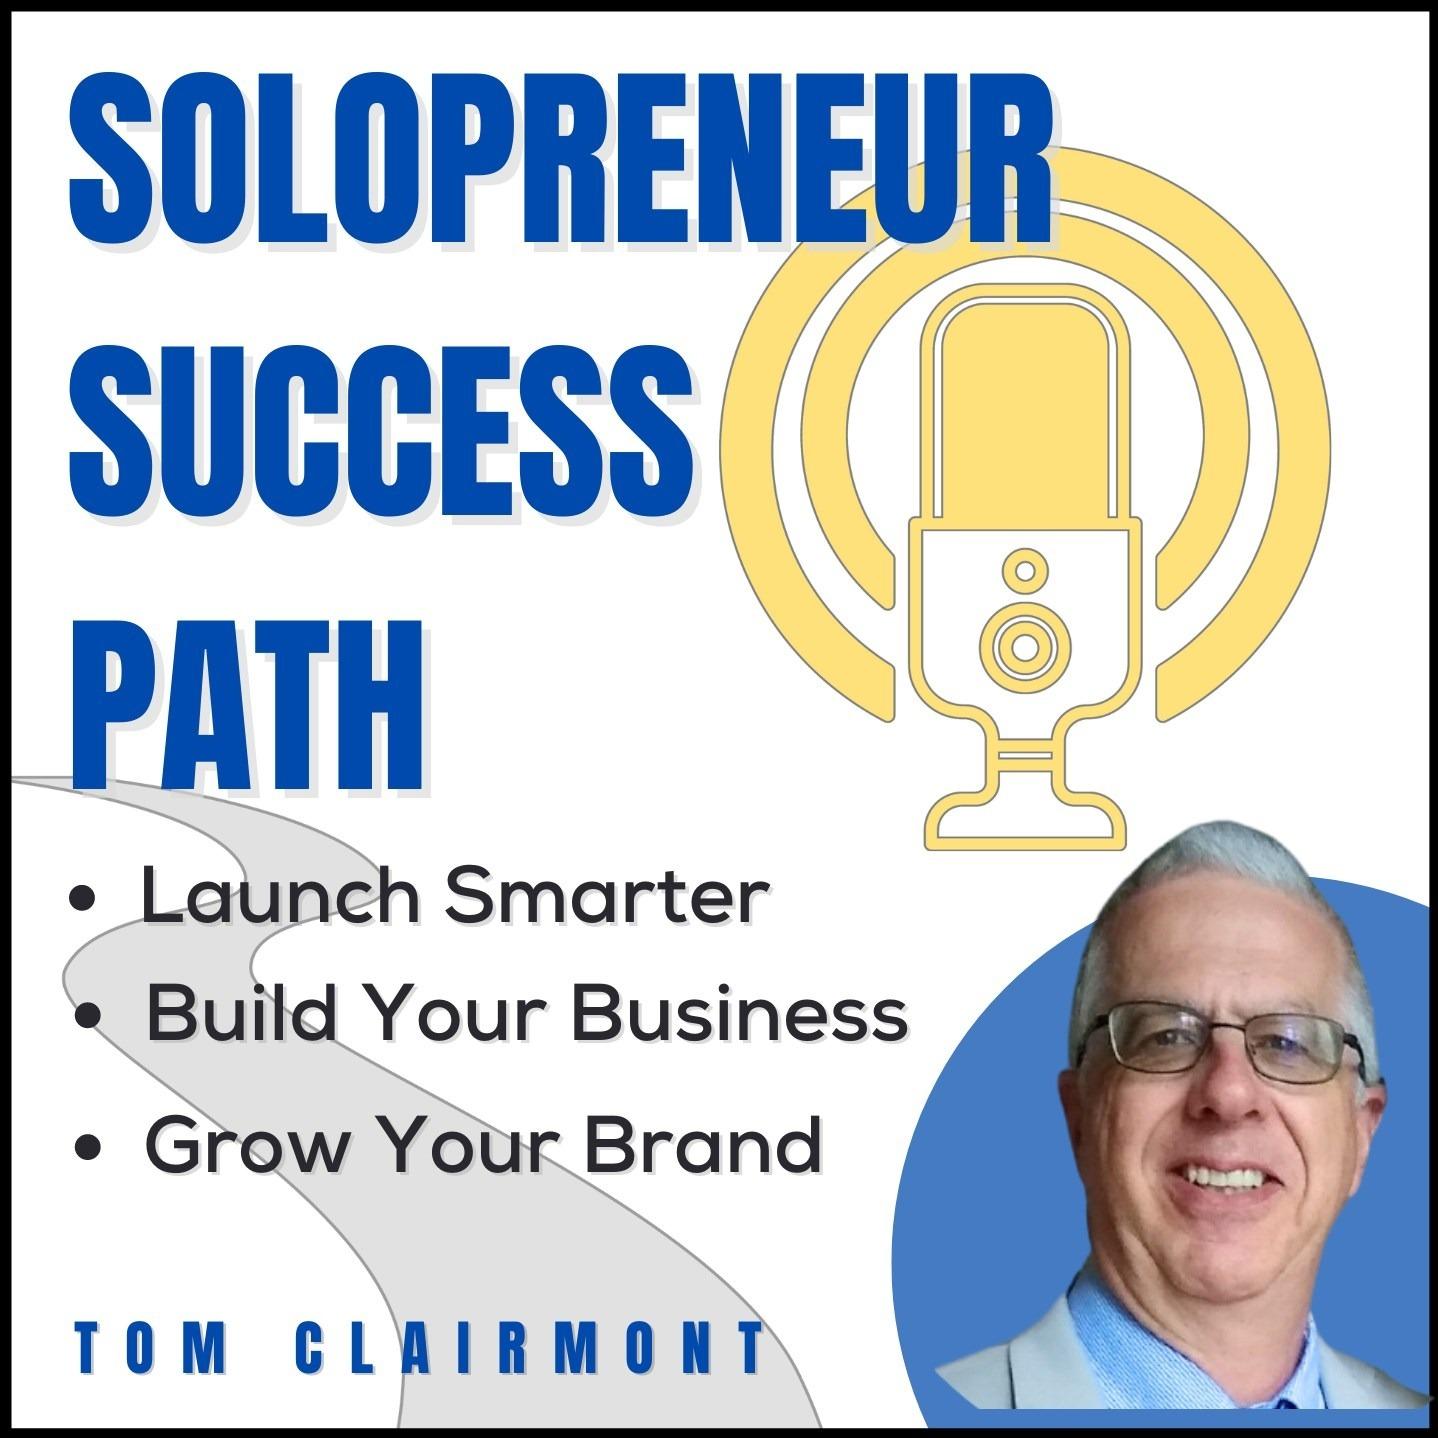 Solopreneur Success Path | Have A Profitable Online Business